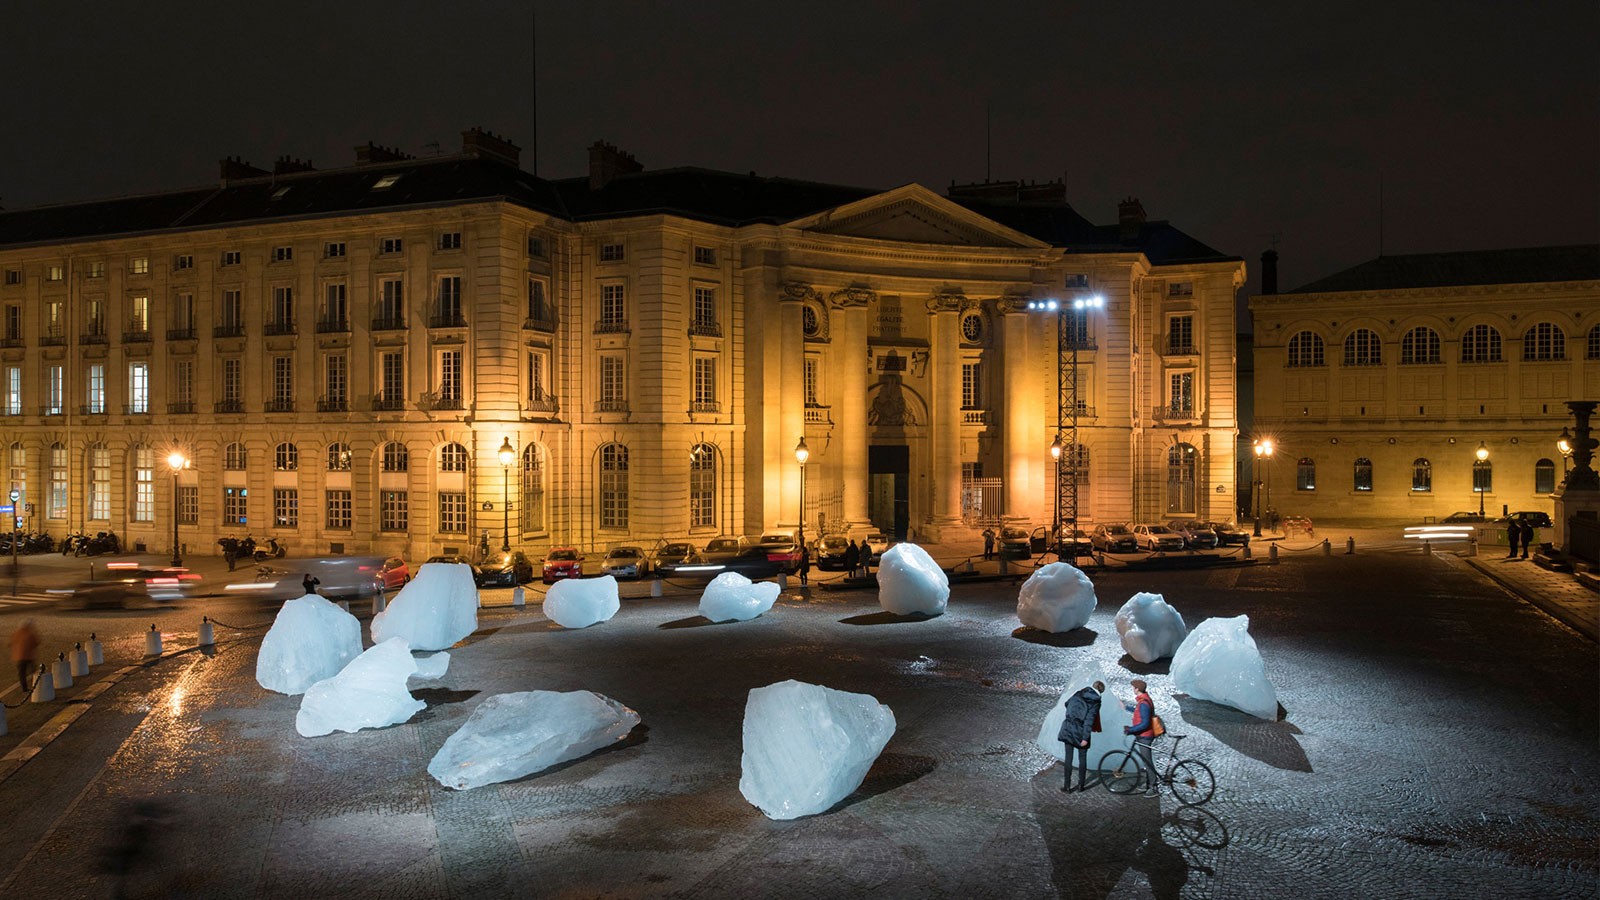 Ice Watch, Installation de Olafur Eliasson et Minik Rosing, Place du Panthéon, Paris, 3-12 Décembre 2015. Source : http://icewatchparis.com/